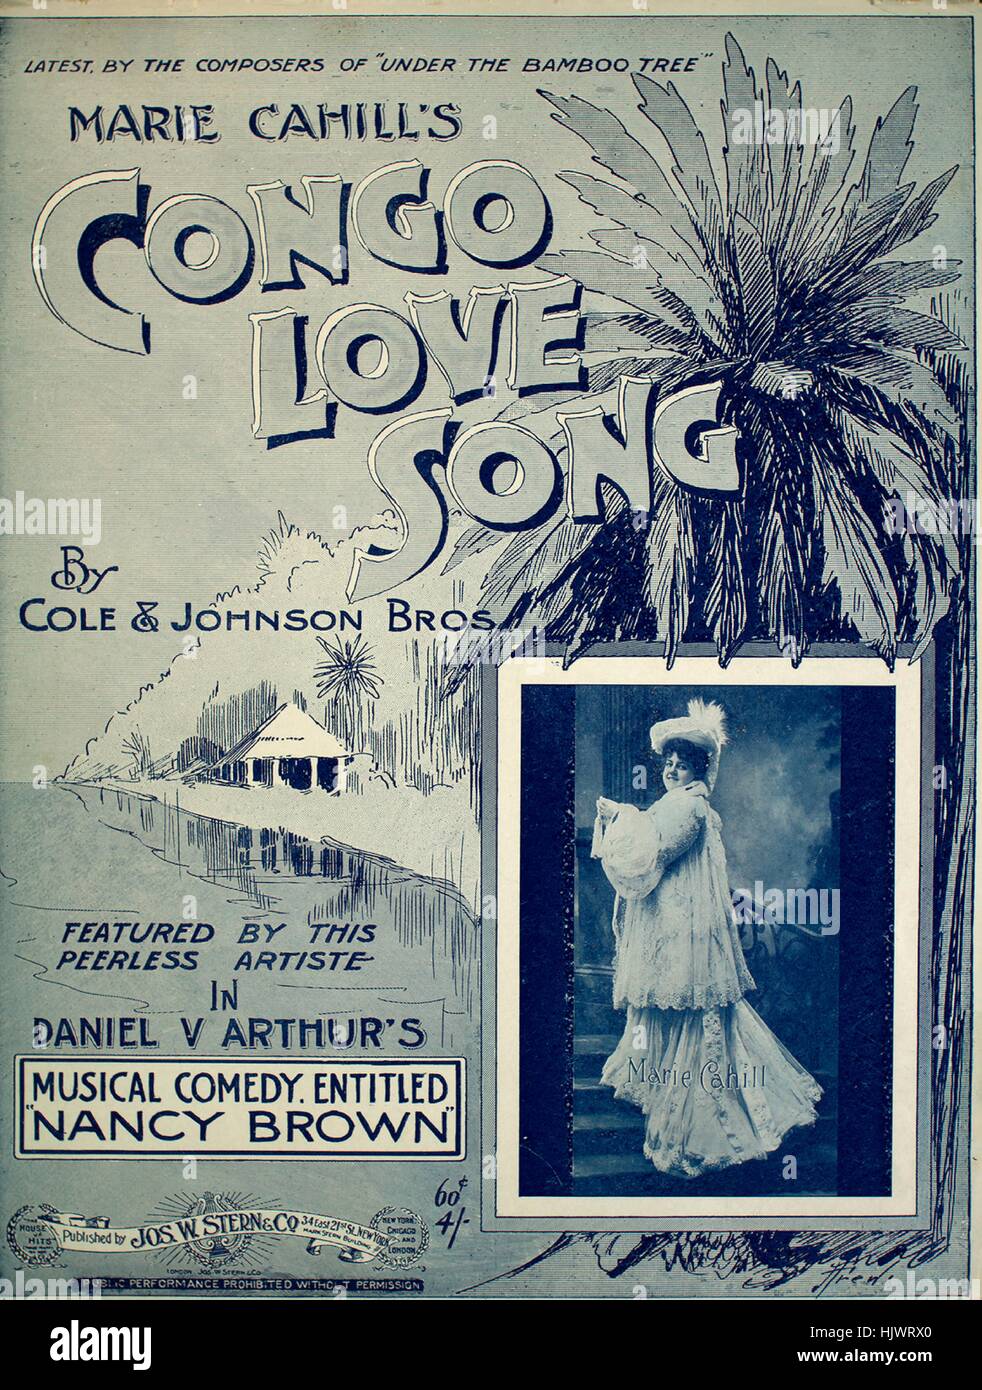 Foglio di musica immagine copertina della canzone Marie Cahill il Congo canzone  d'amore, con paternitã originale lettura delle note Parole da JW Johnson  musiche di Rosamond Johnson', Stati Uniti, 1903. L'editore è